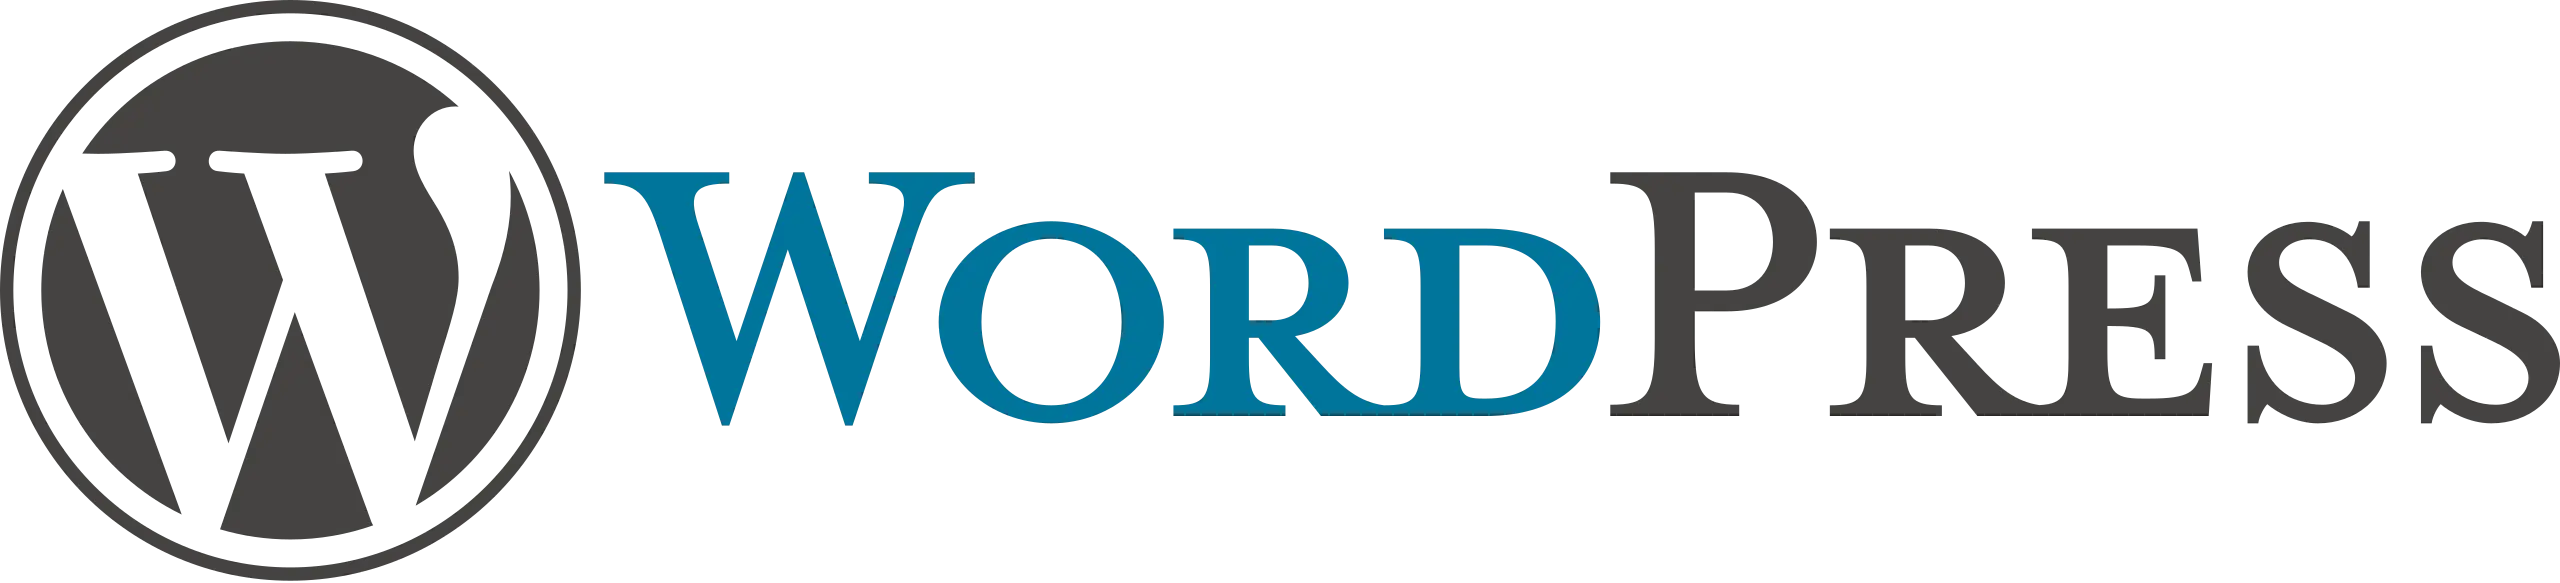 Wordpress Logo png.svg